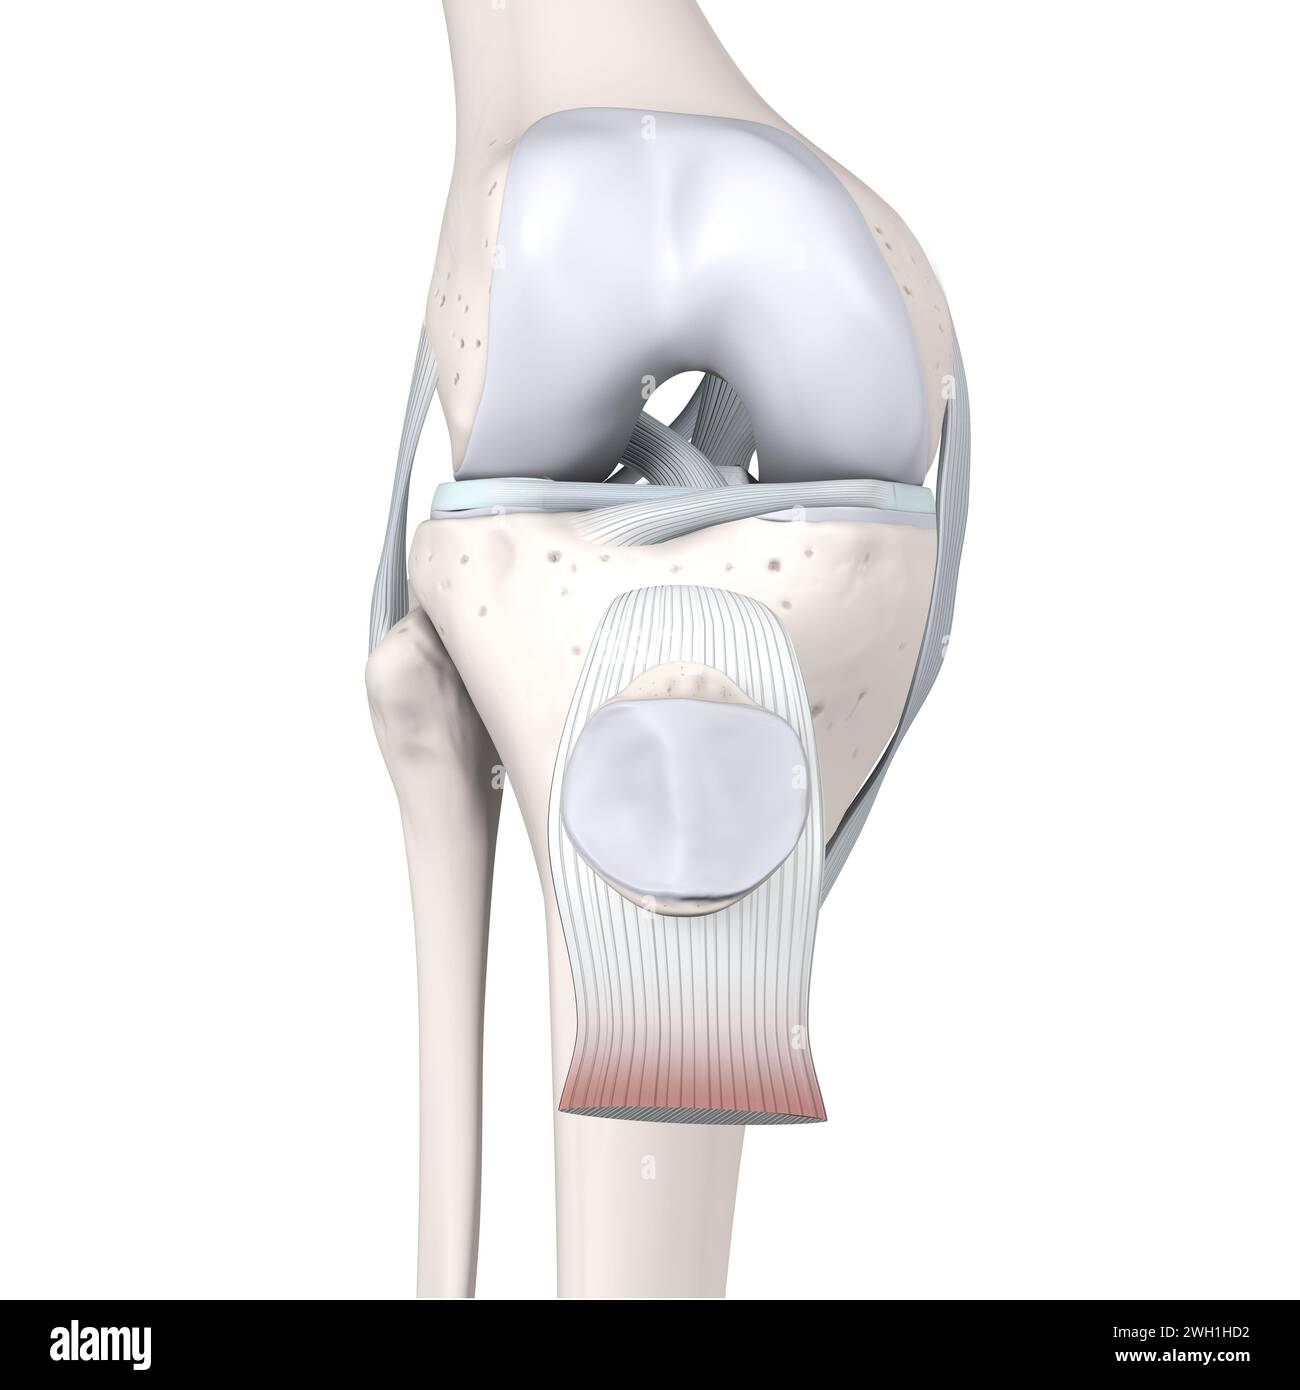 Illustrazione 3D che mostra l'anatomia articolare del ginocchio. Ossa, menischi, cartilagine articolare e legamenti. Vista frontale. Illustrazione 3D. Foto Stock